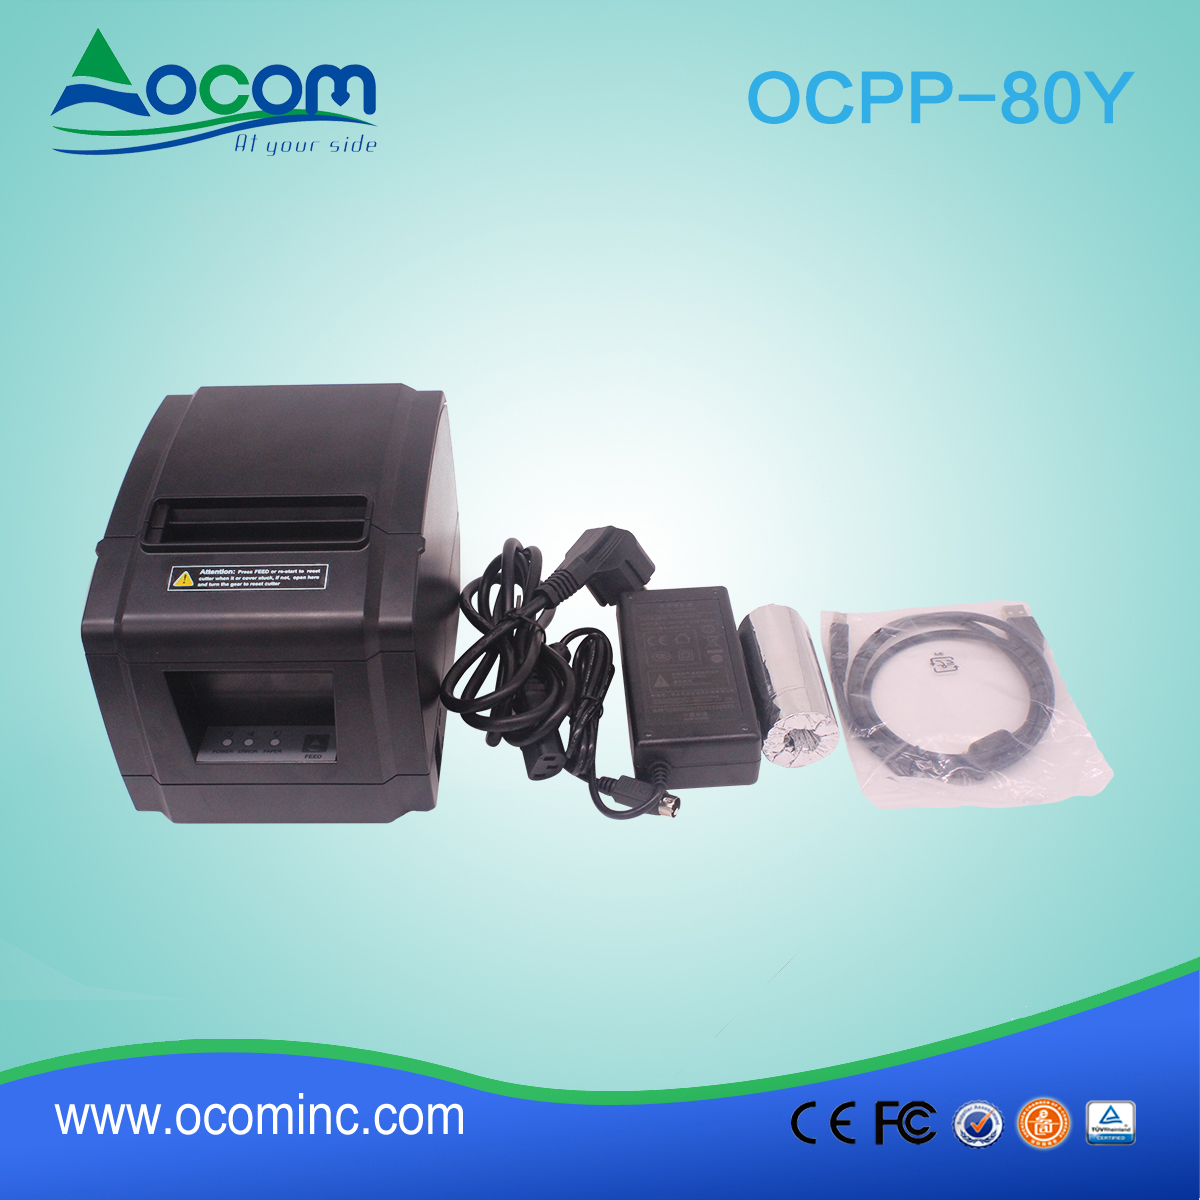 OCPP-88A-中国80mm POS收据打印机正在推广中